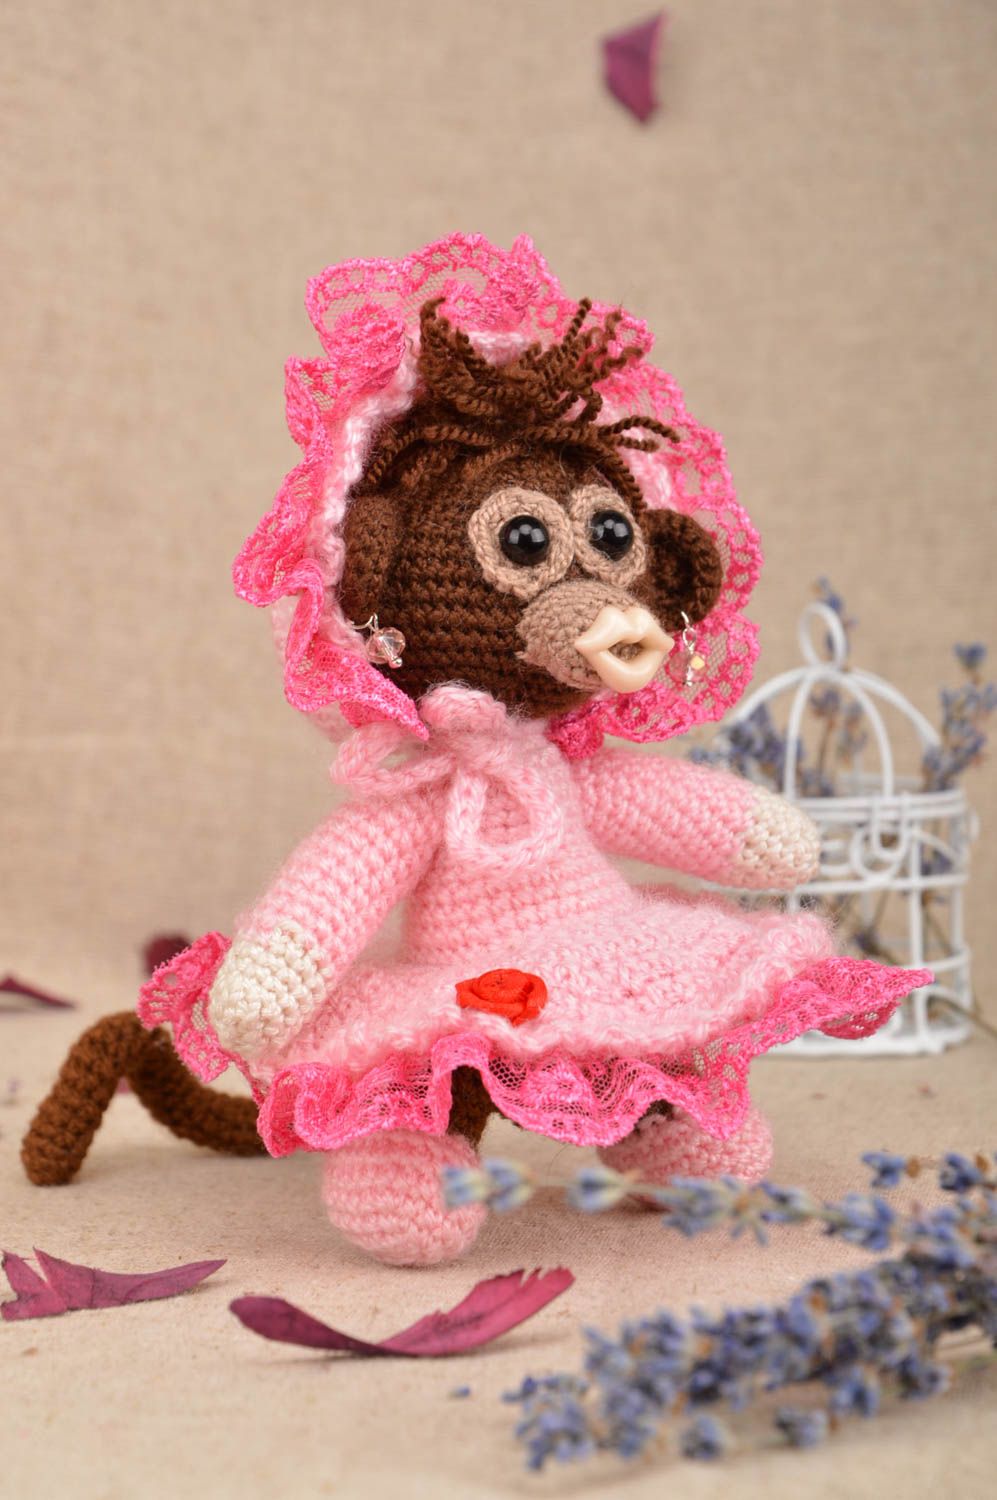 Мягкая вязаная игрушка обезьянка в розовом наряде из акриловых ниток хендмейд фото 1